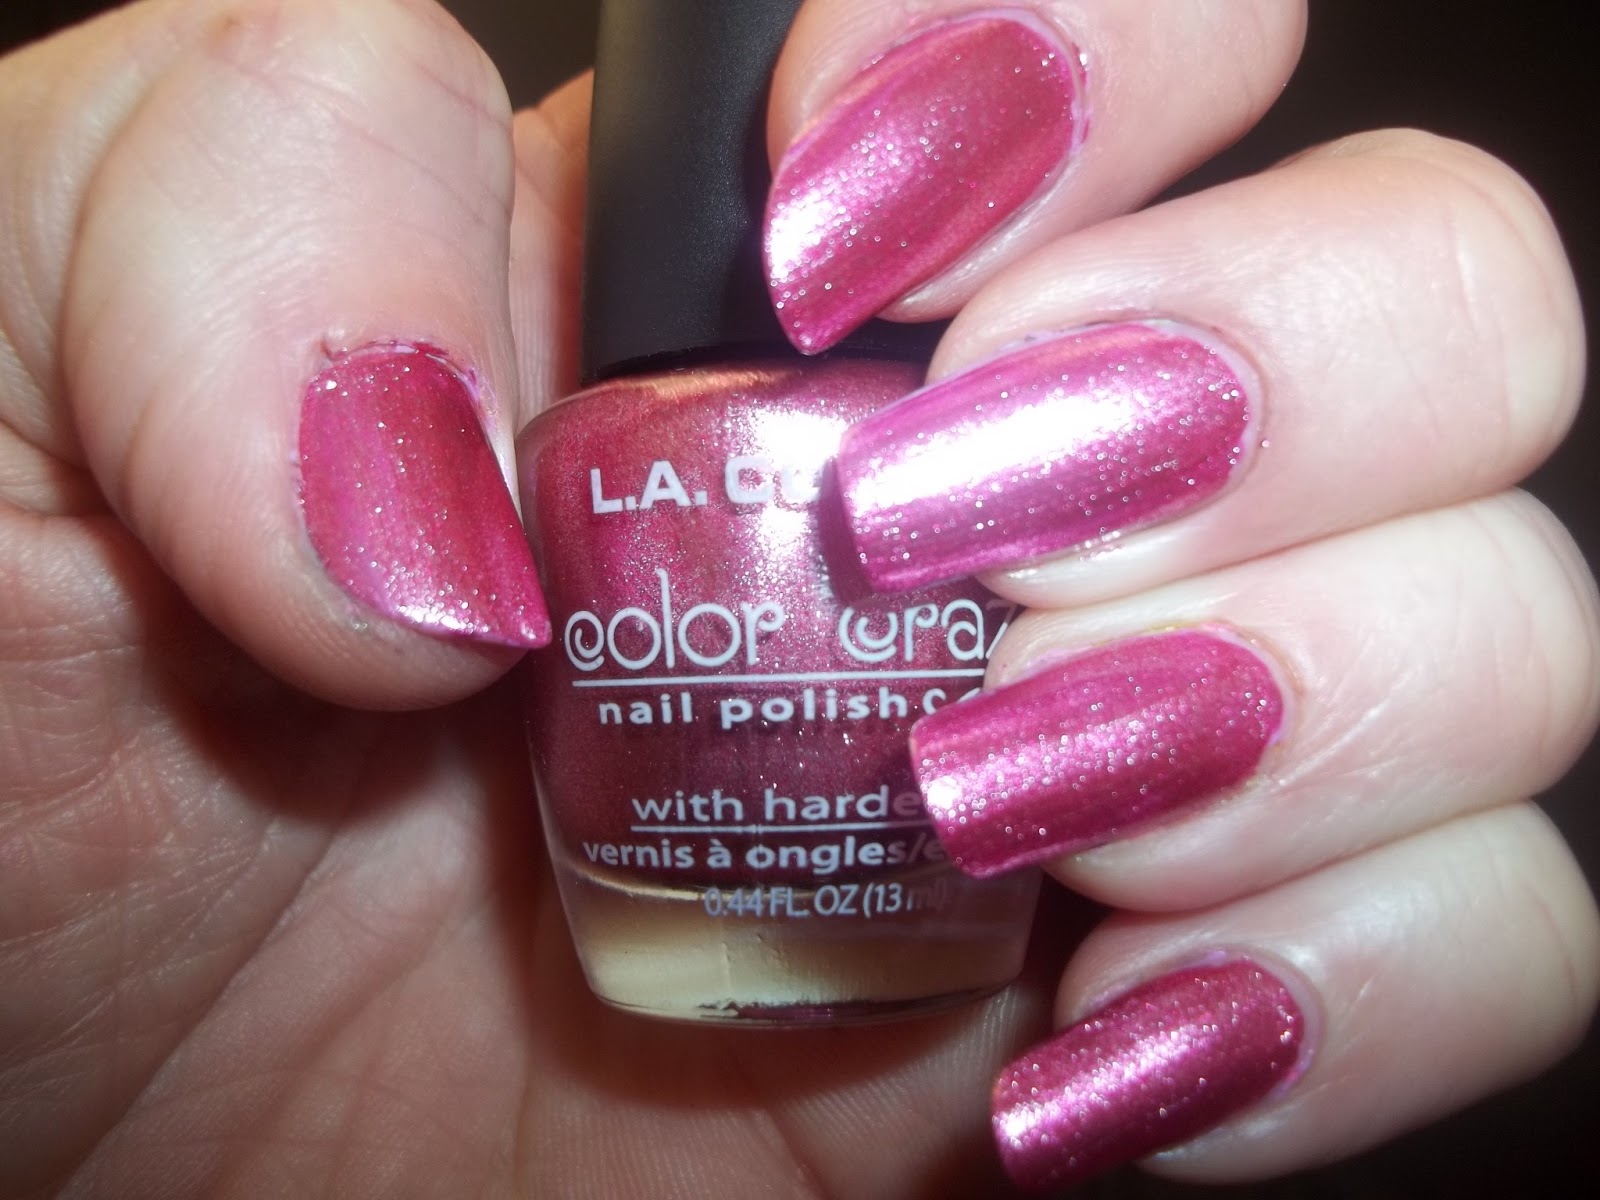 1. L.A. Colors Color Craze Nail Polish - Gold Digger - wide 9